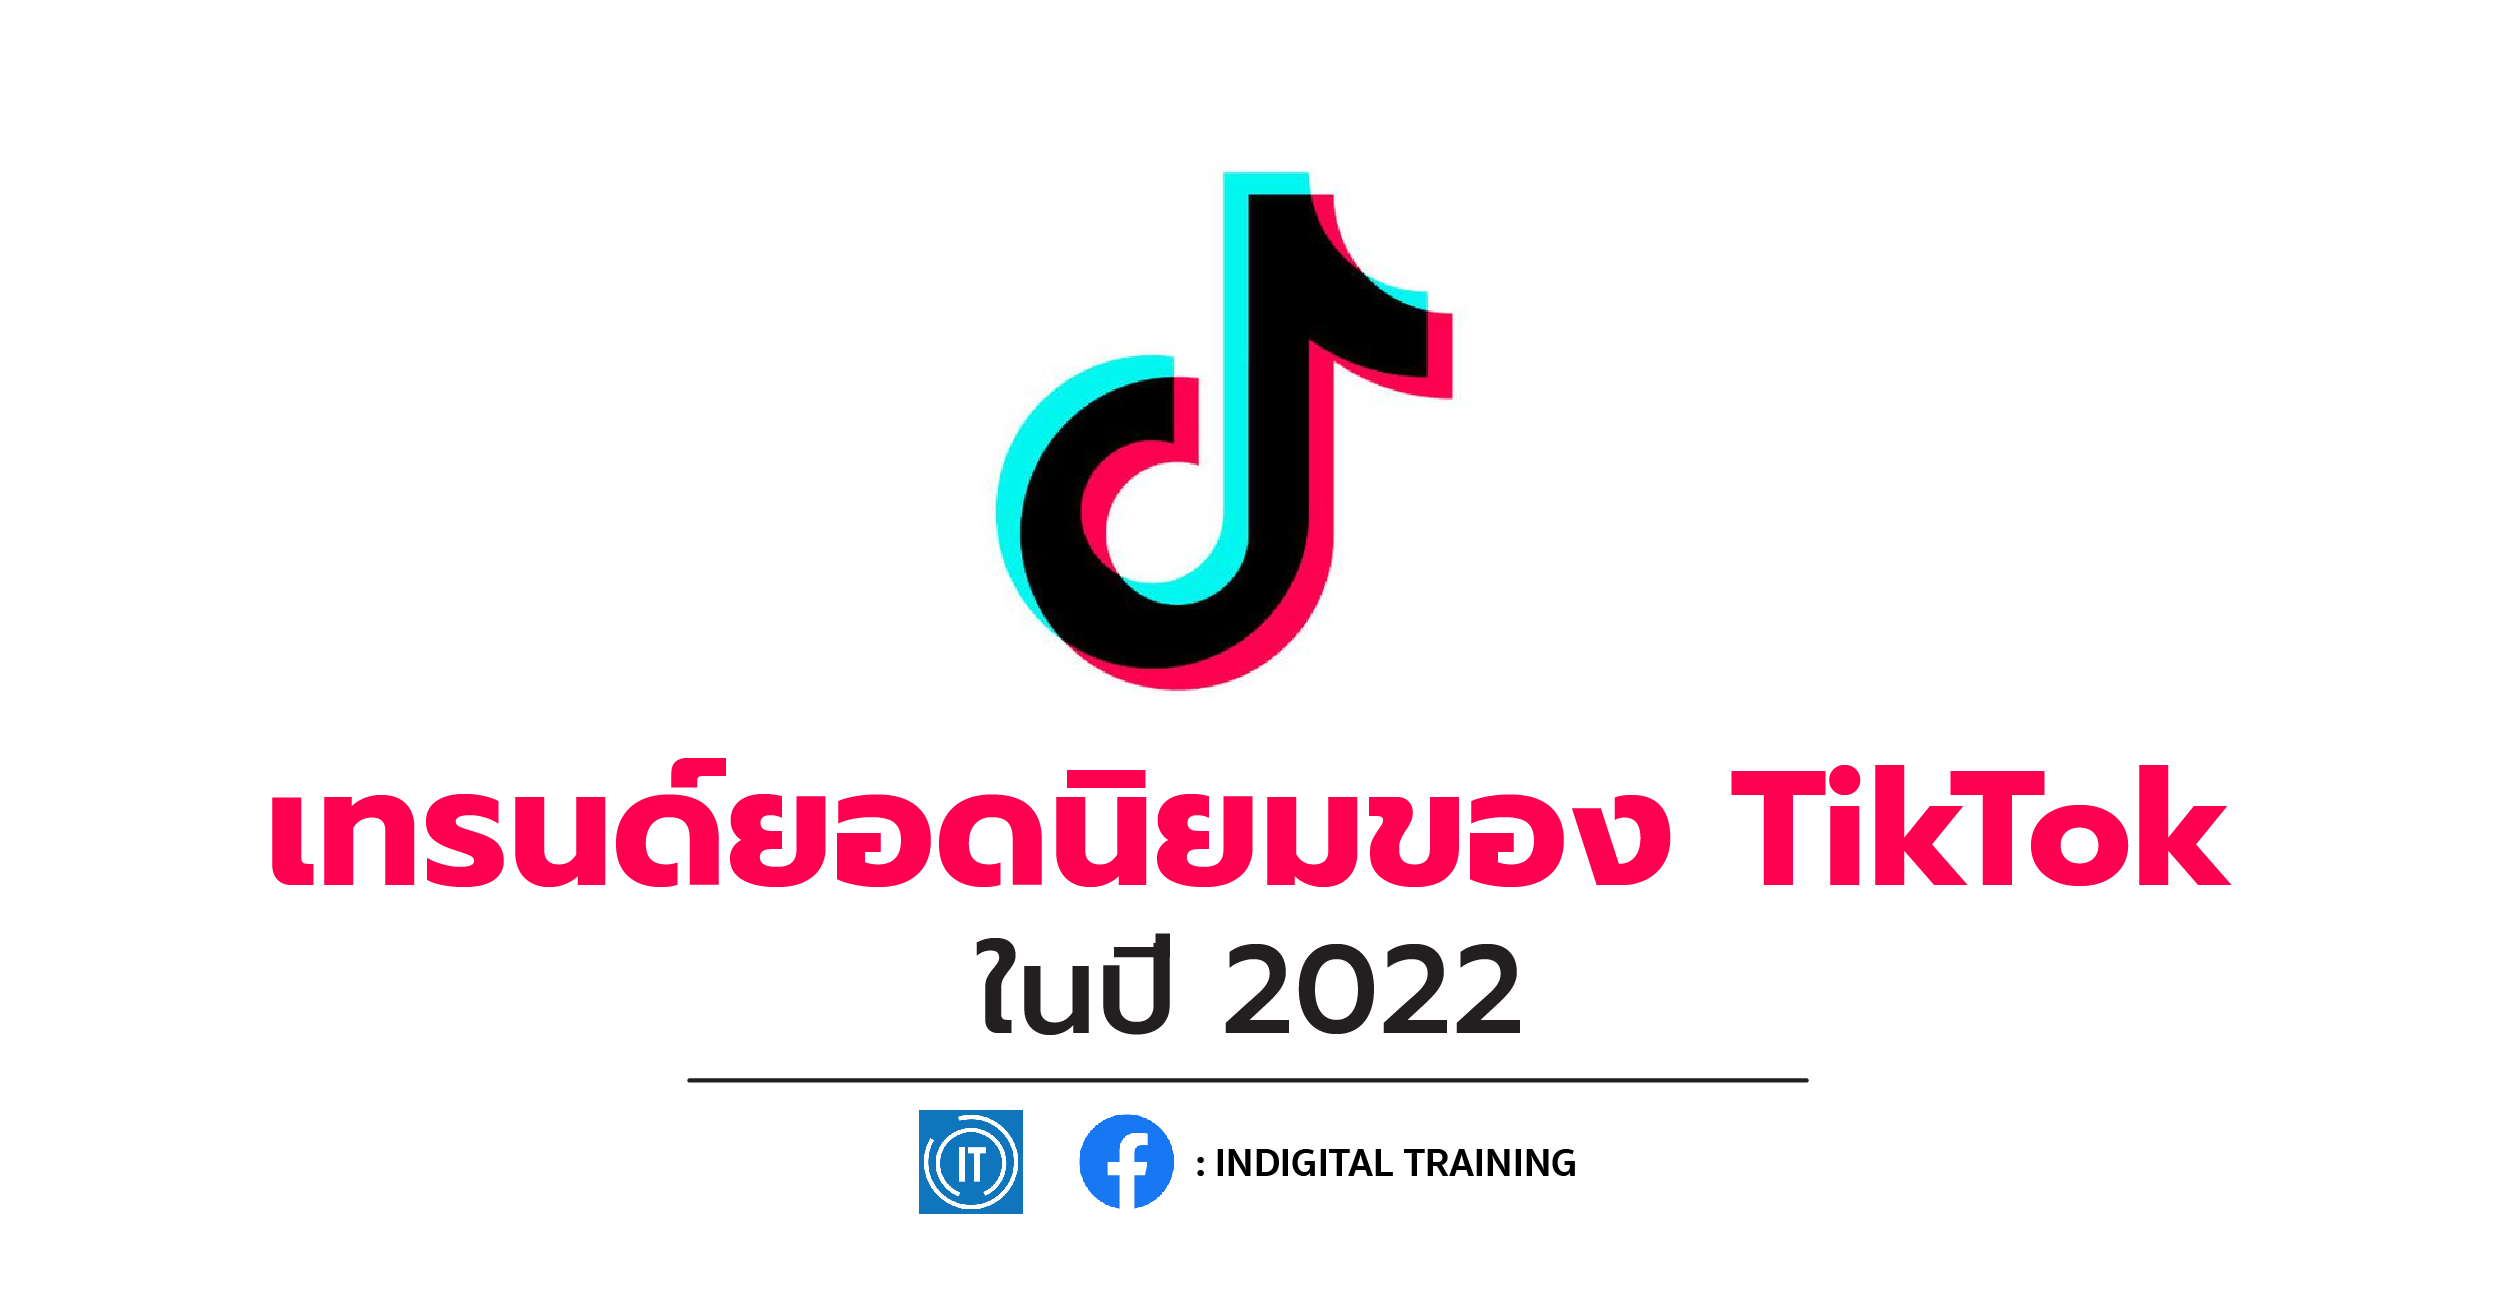 เทรนด์ยอดนิยมของ TikTok ในปี 2022